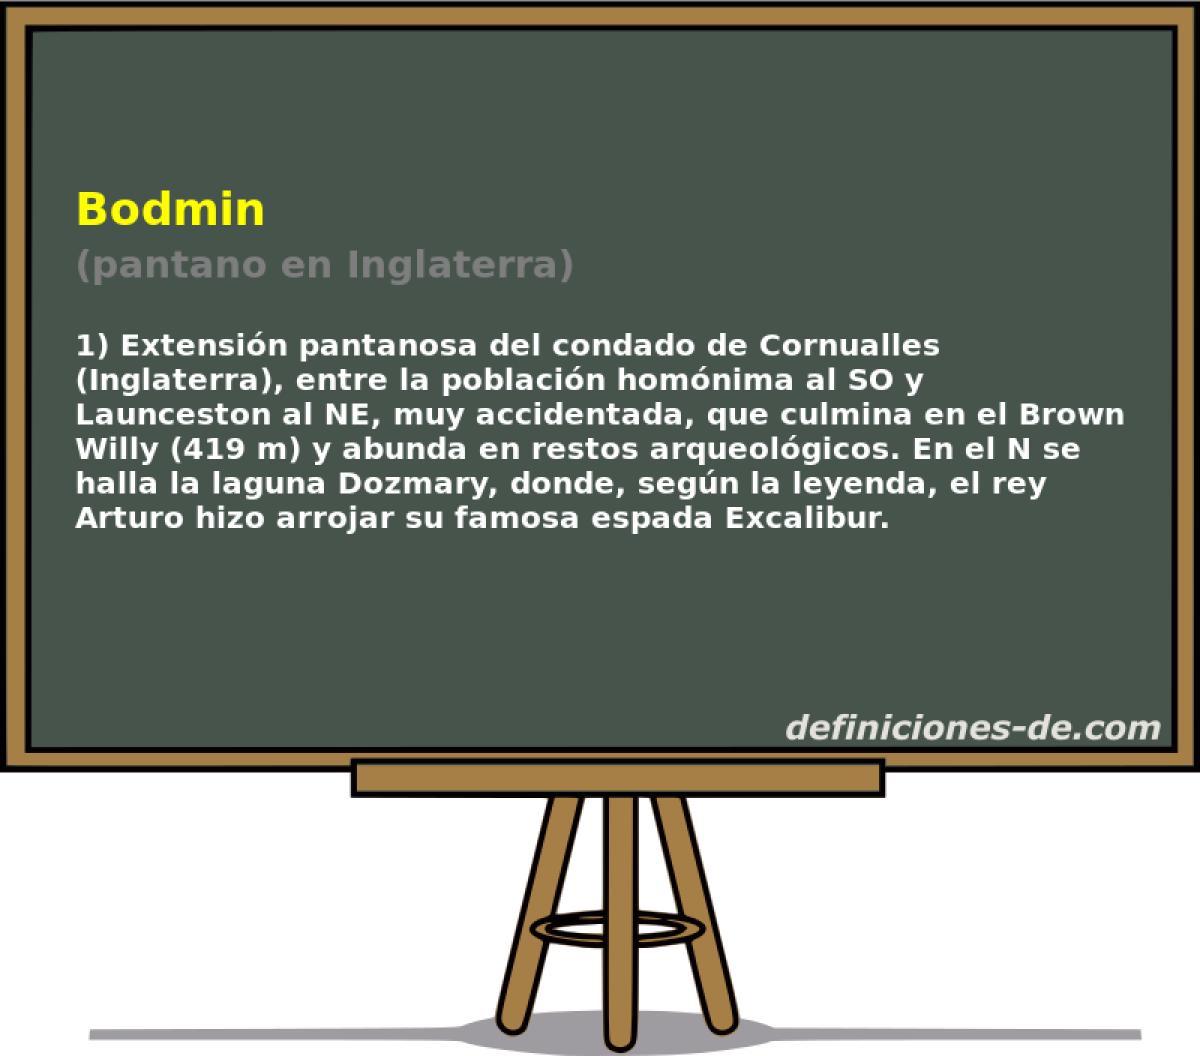 Bodmin (pantano en Inglaterra)